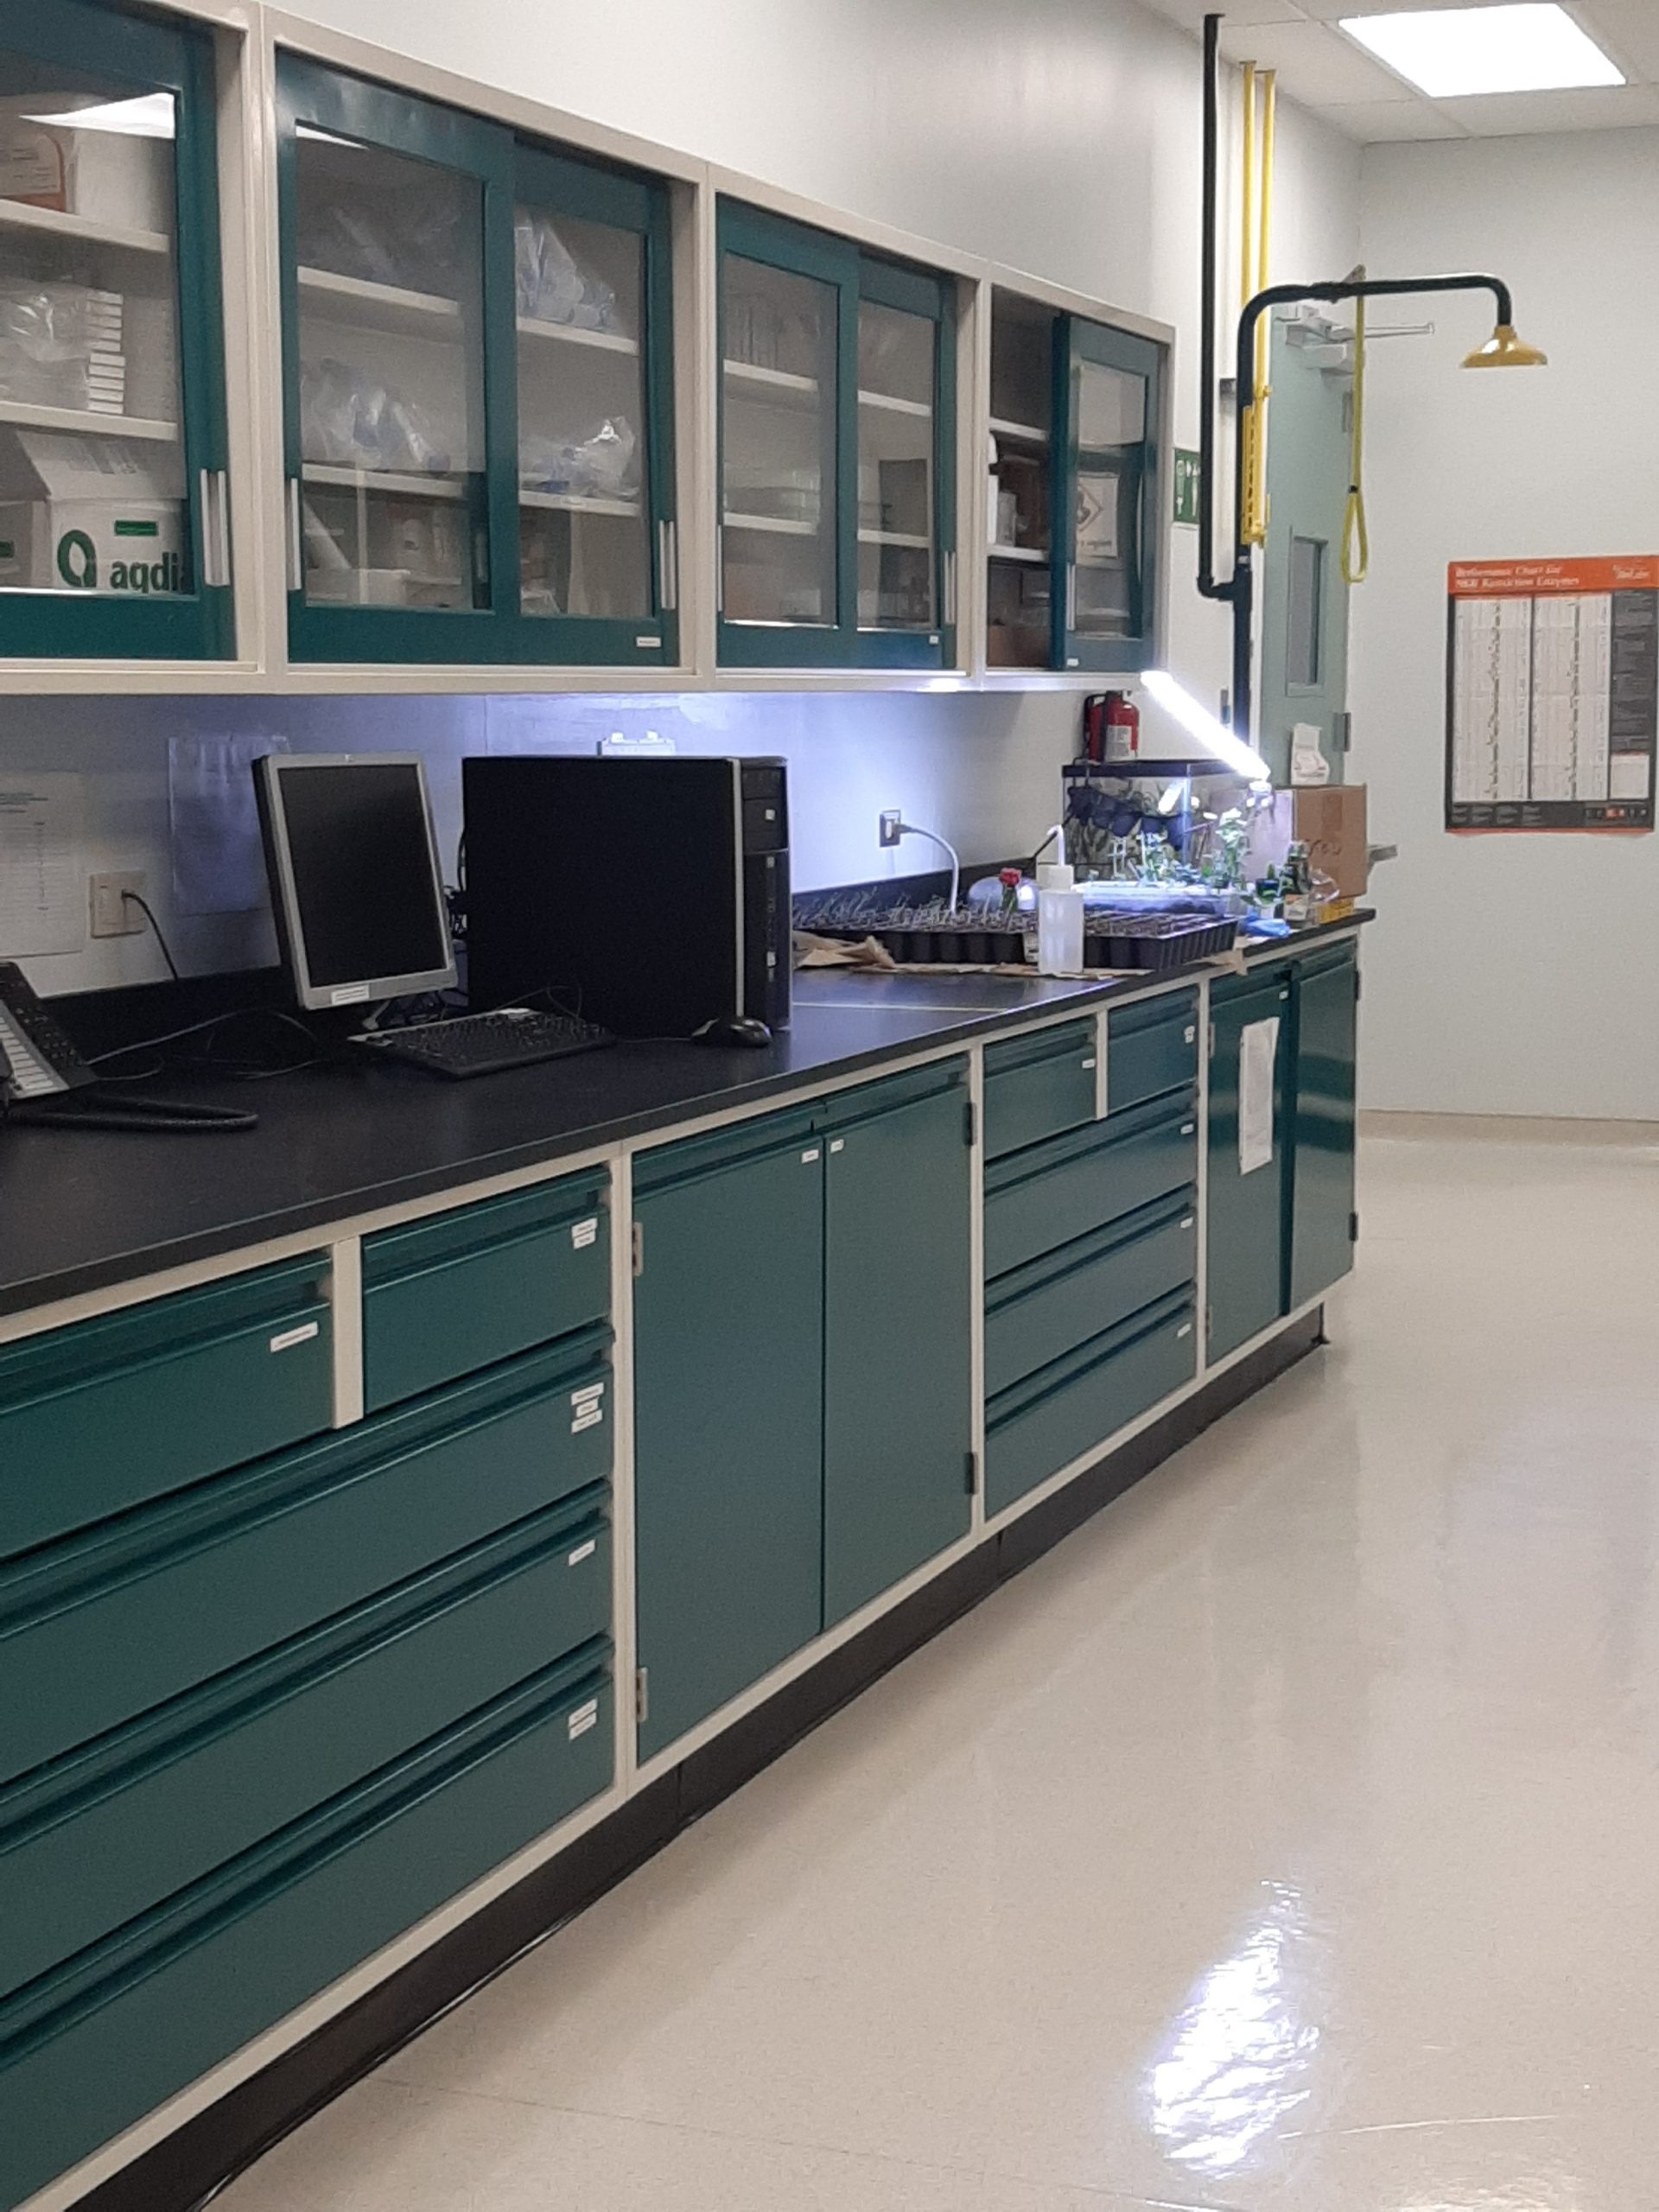 Laboratorio de Microbiología - Dr. Xavier Cruz